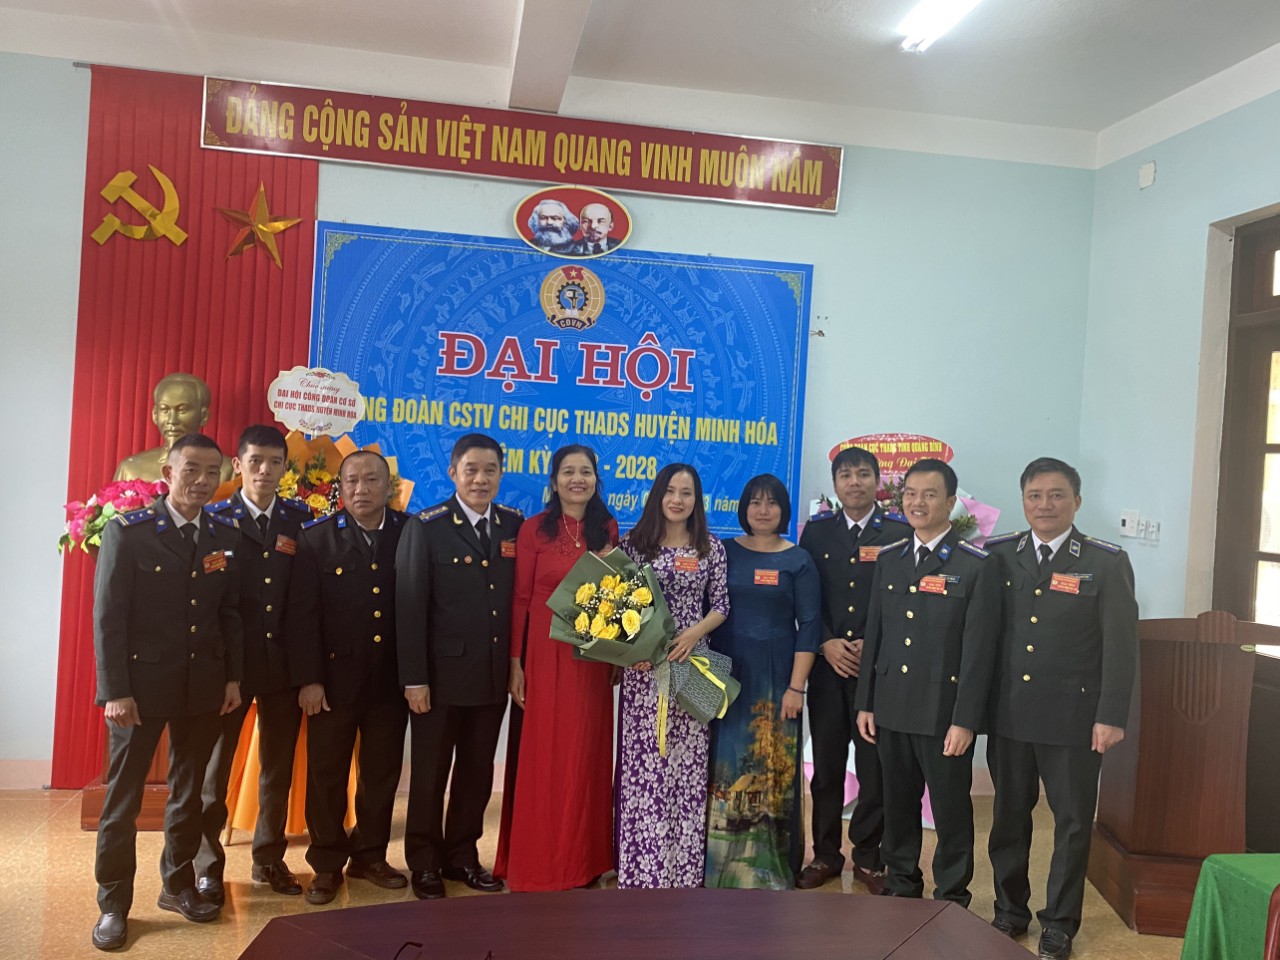 Công đoàn cơ sở thành viên Chi cục THADS huyện Minh Hóa tổ chức thành công Đại hội nhiệm kỳ 2023- 2028